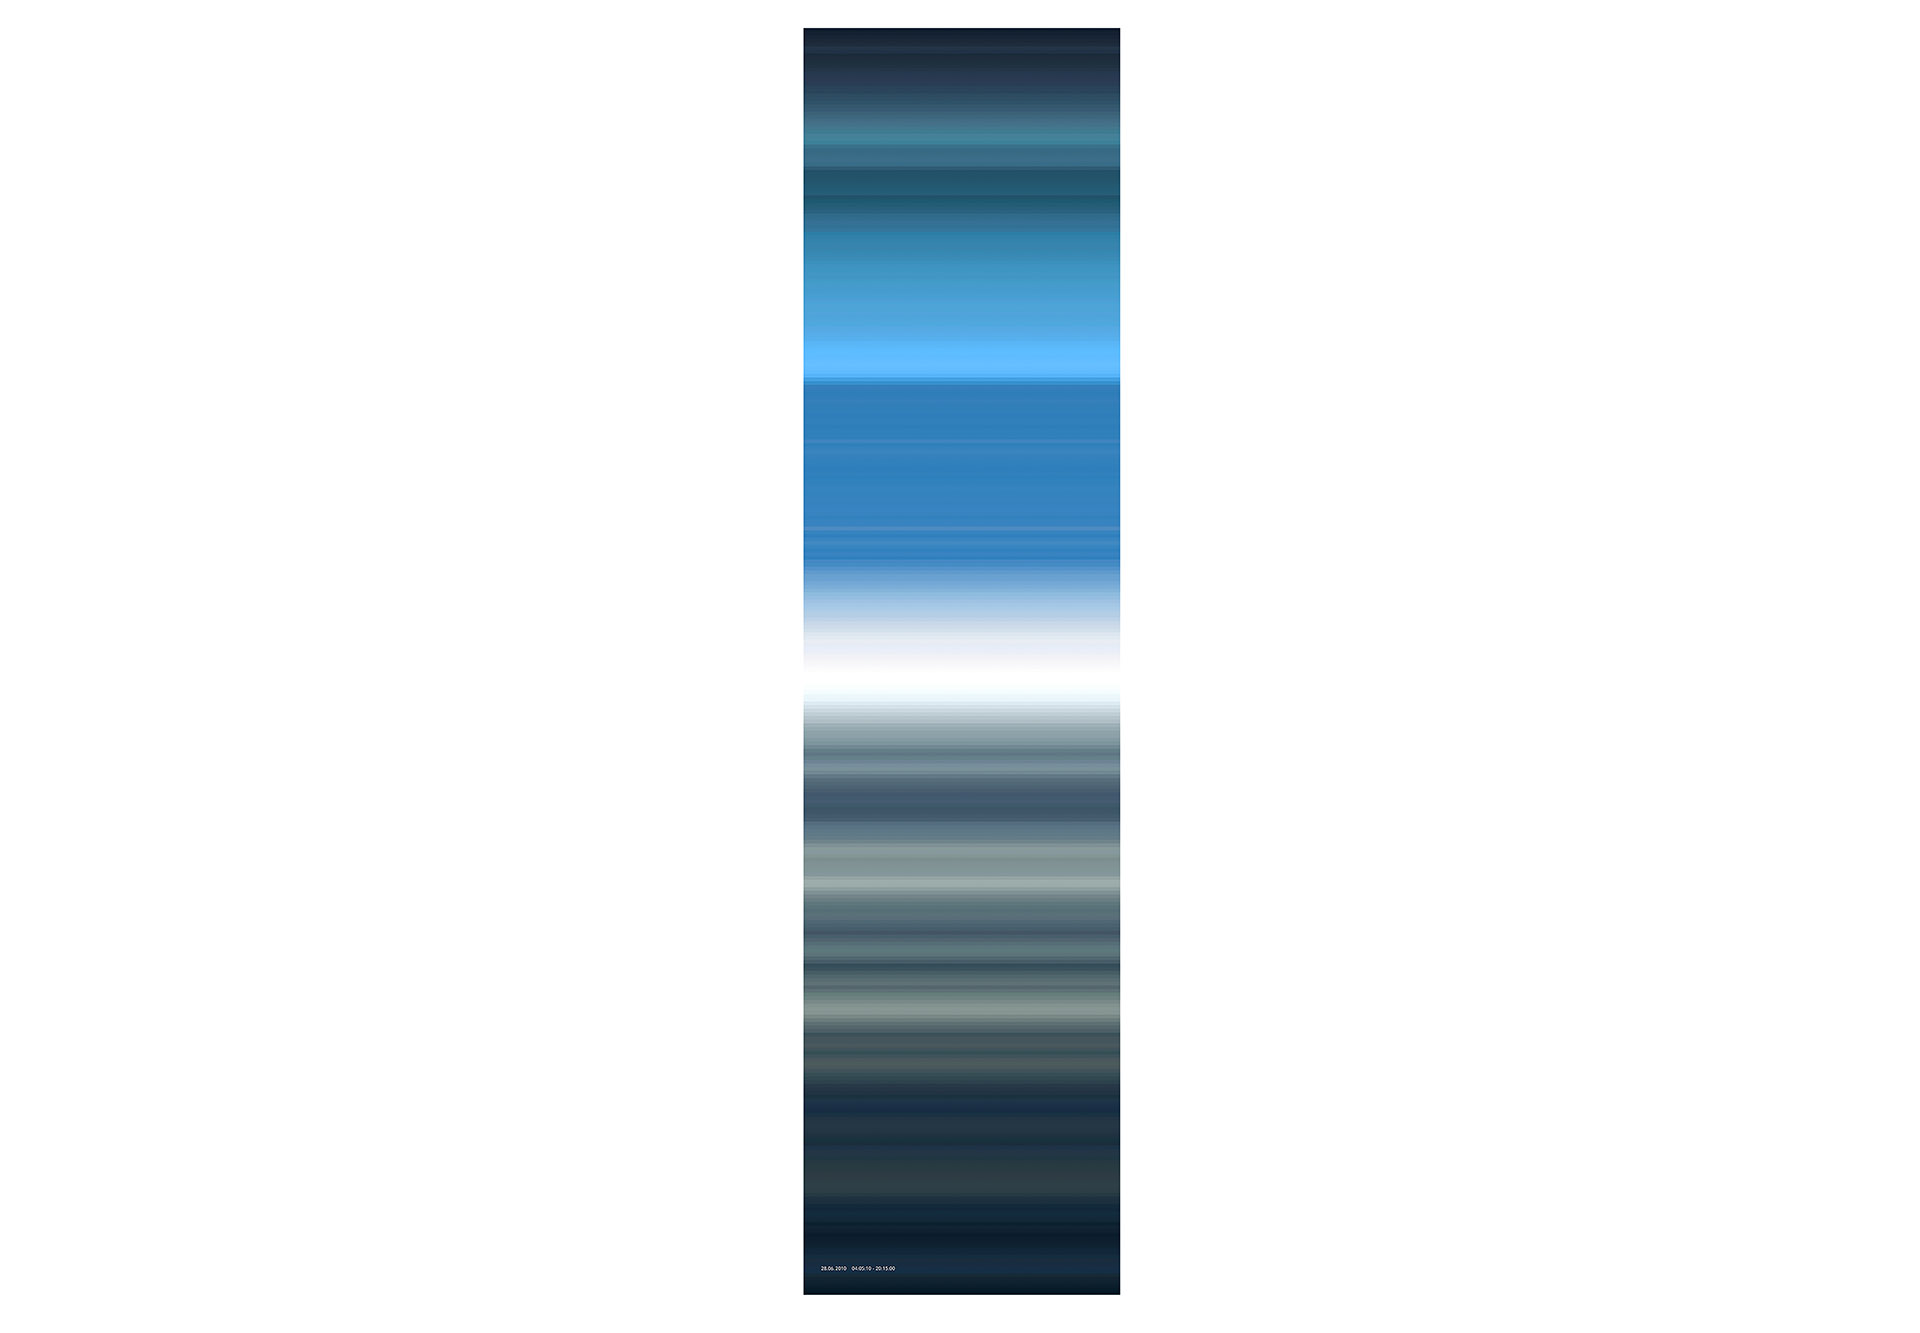 blau, unendlich 2018/35 - 28.07.2010 - 04:05:10 - 20:15:00, Giclée Druck auf Hahnemühle Photo Gloss 260g, auf Aluminium, Acrylglas, 1/3, 45 x 180 cm